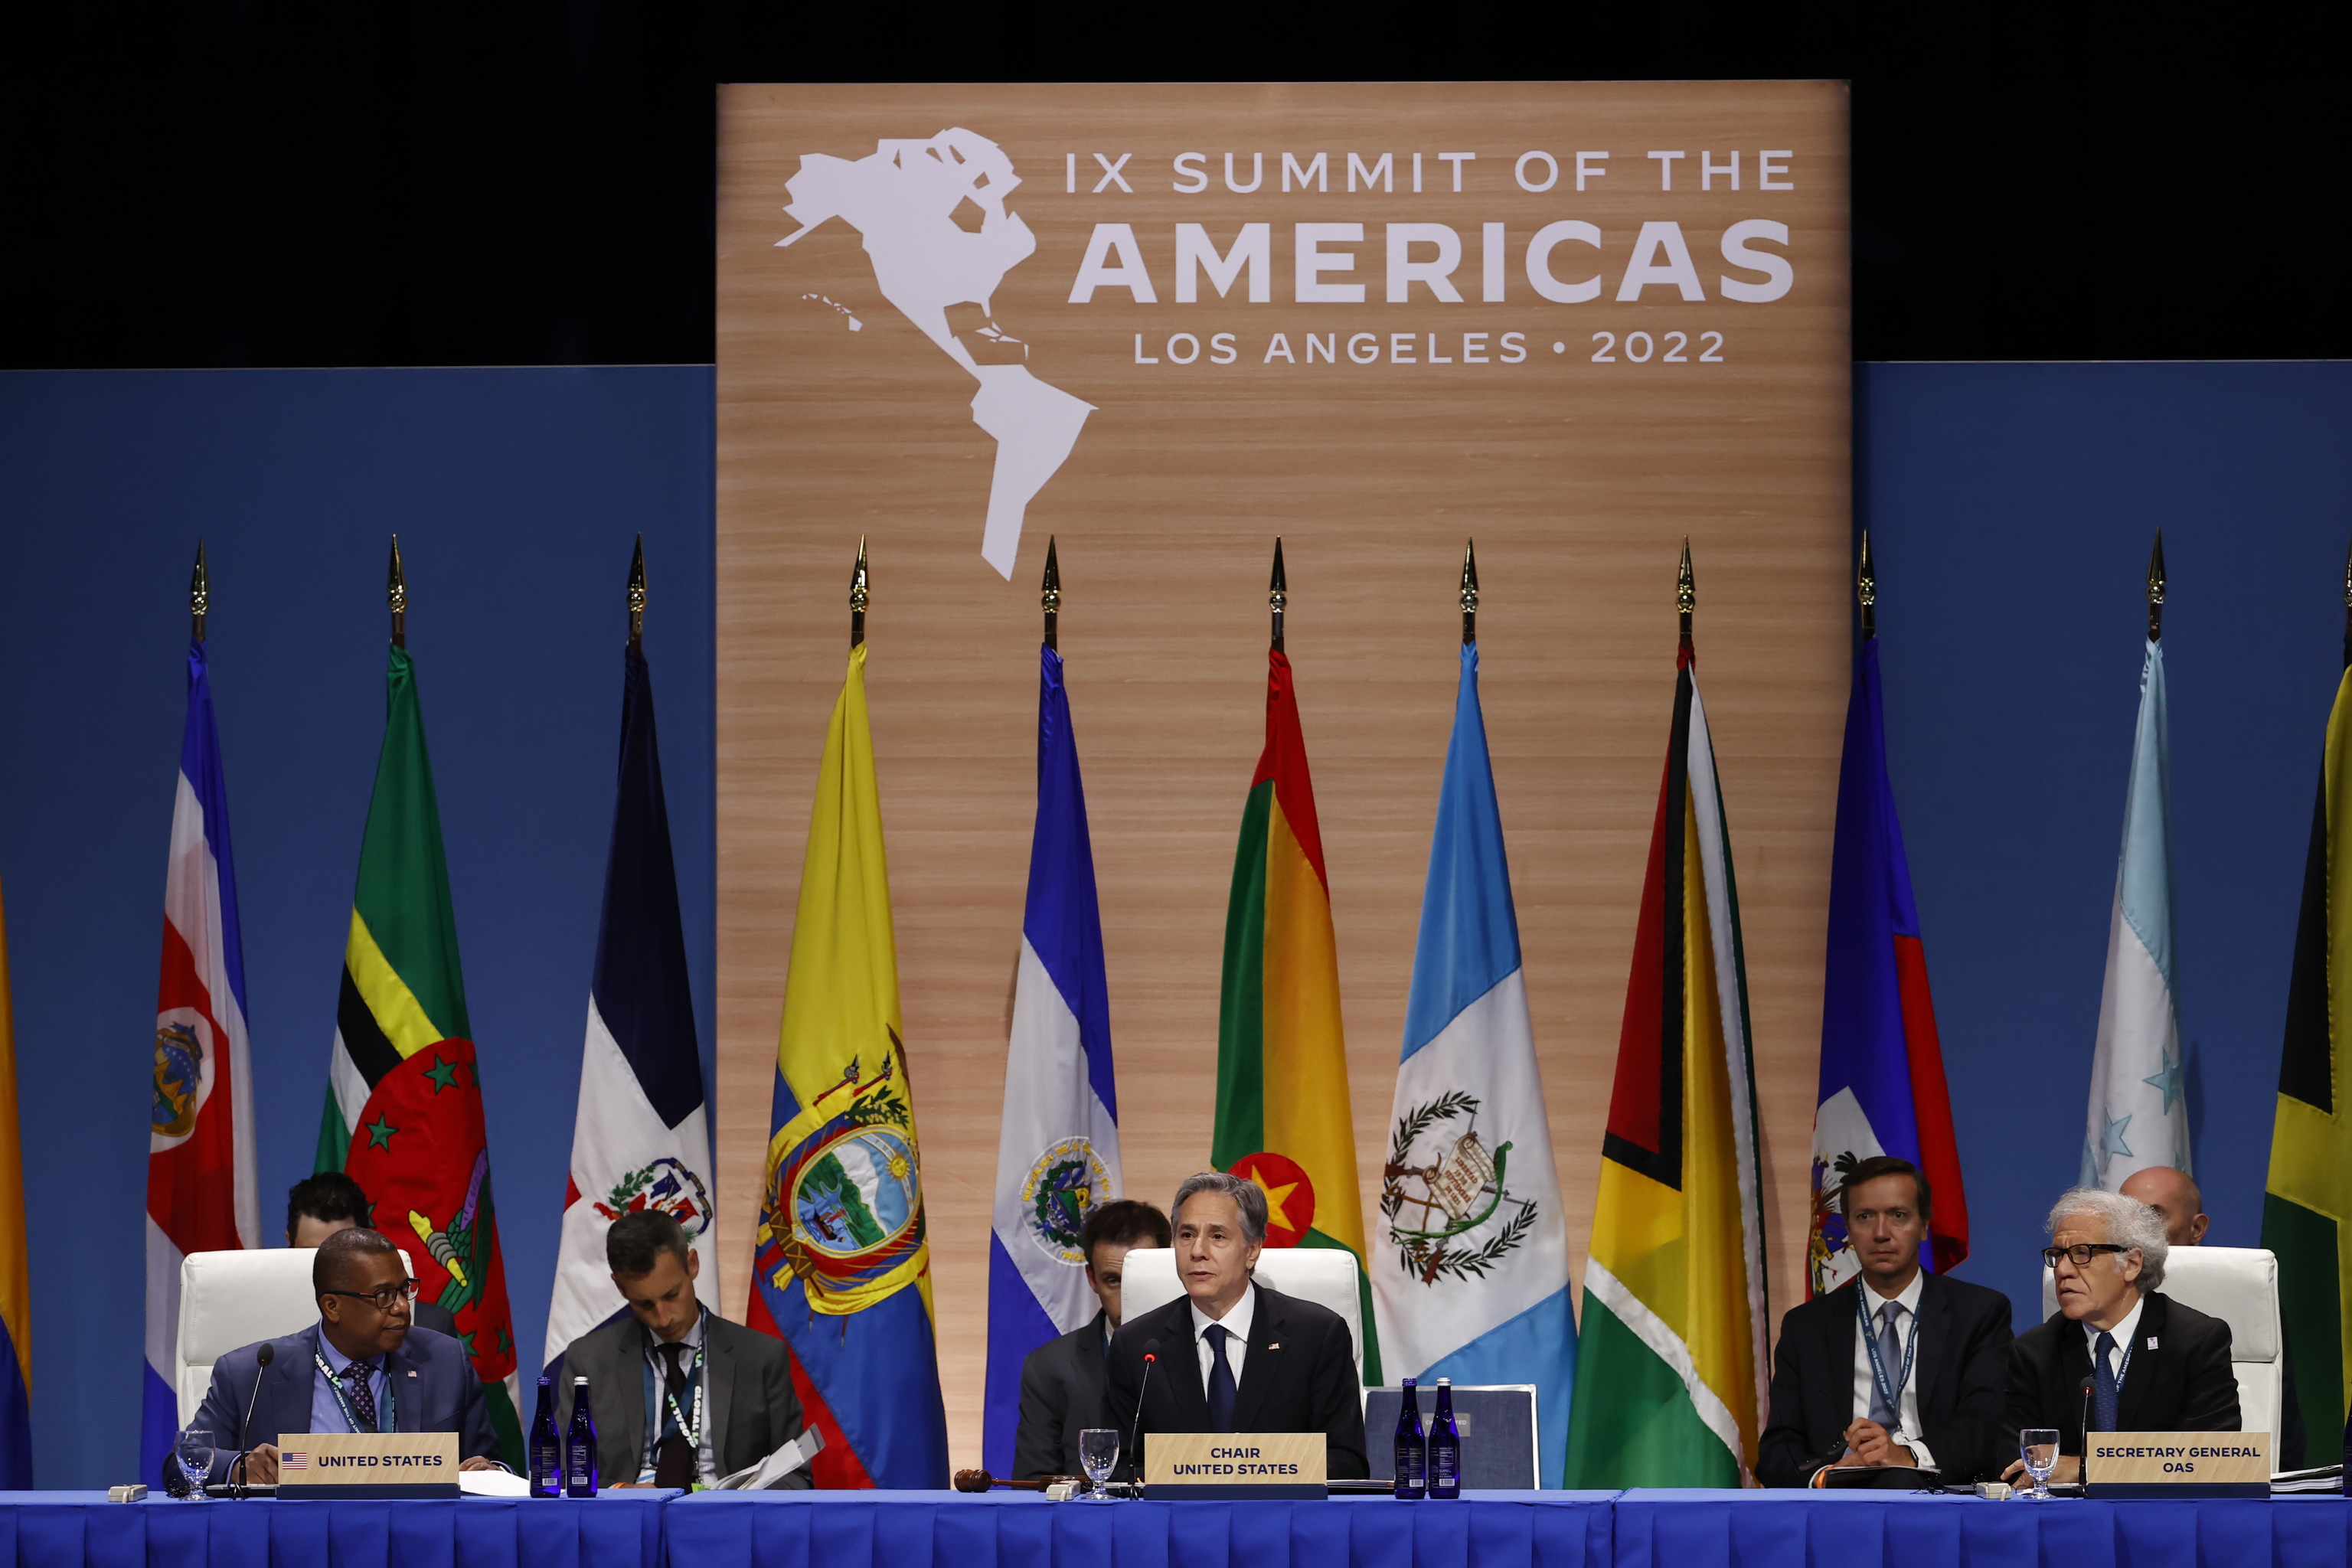 US Secretary of State Antony Blinken presides over the session